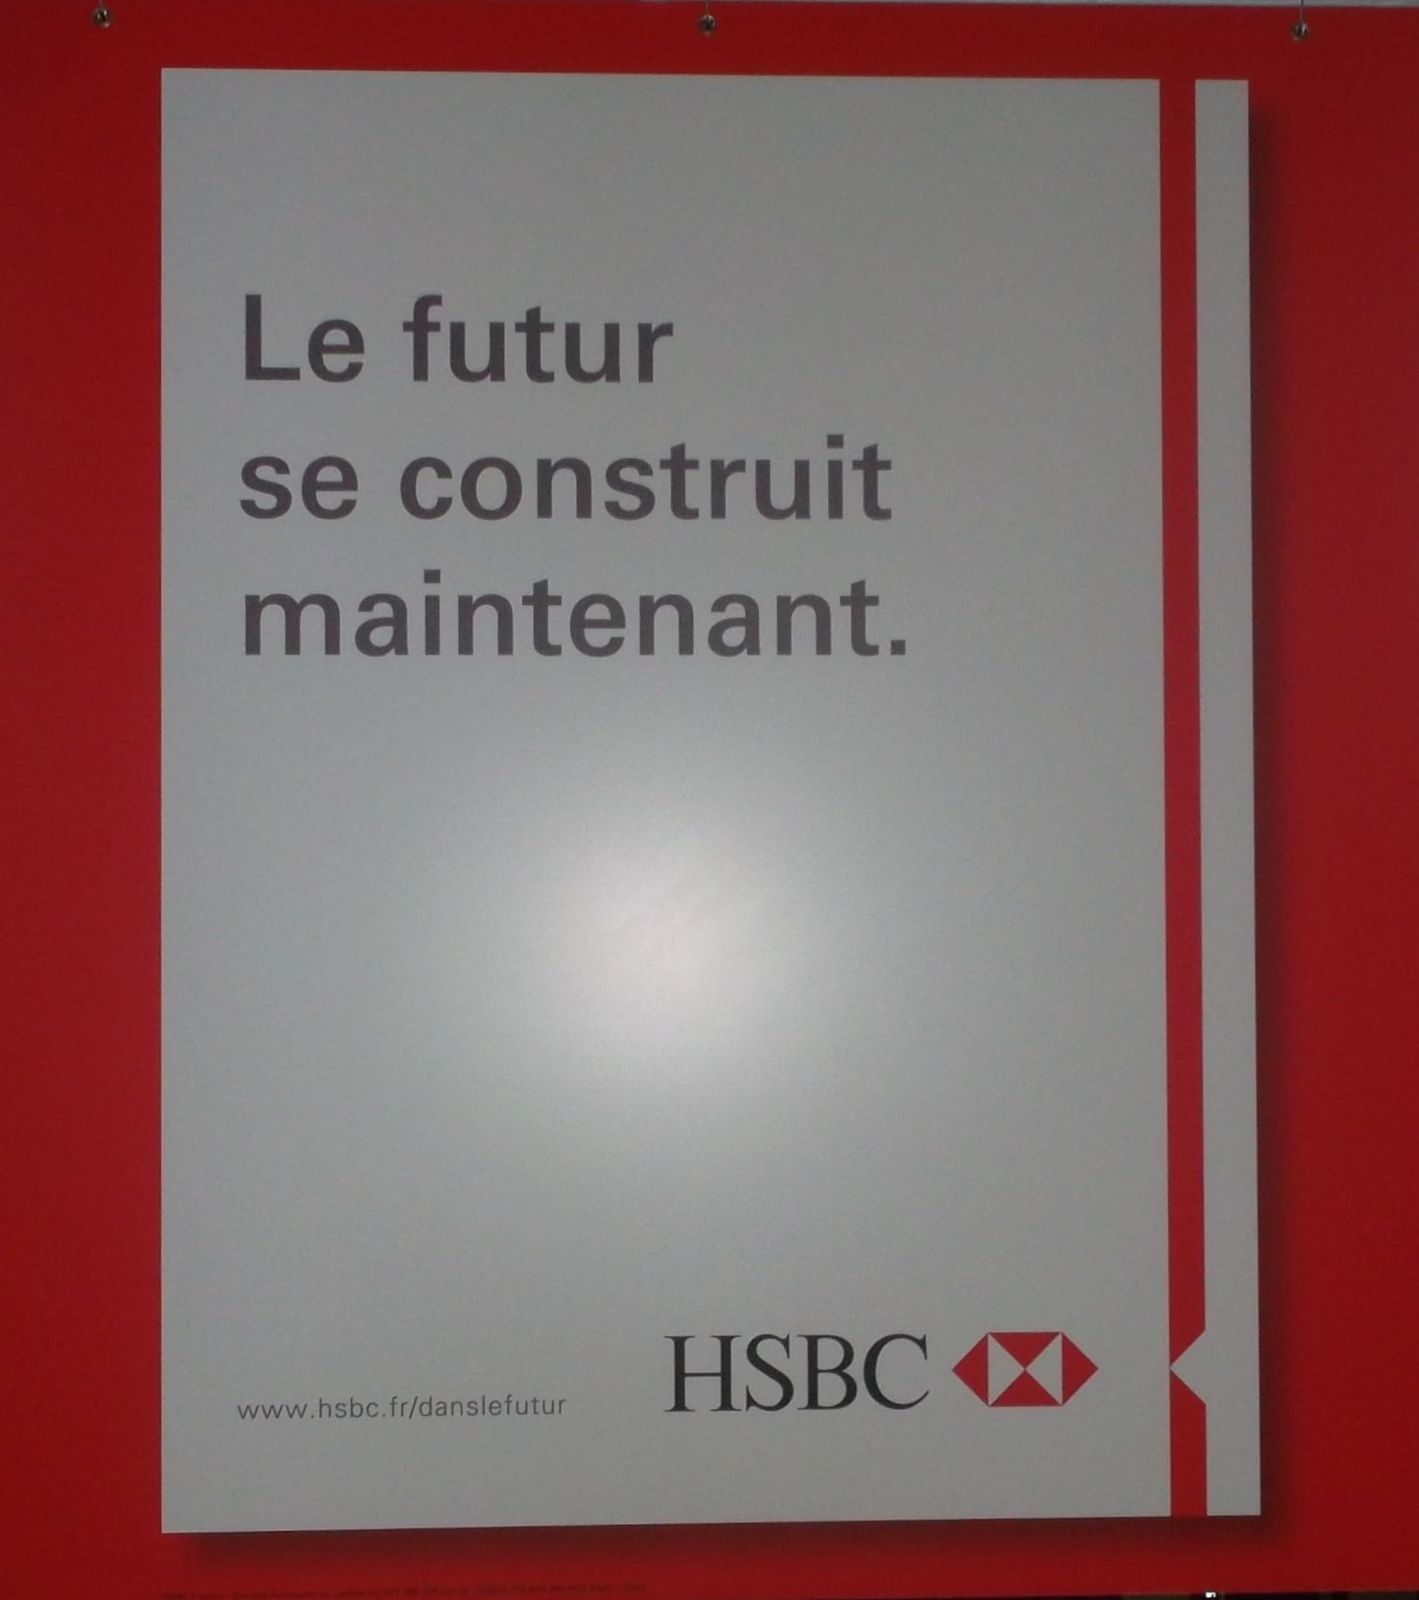 Publicité stupide de la Banque britannique HSBC: Acte 6 - "Le futur de construit maintenant" . Oui? et alors? Il font quoi chez HSBC pour construire le futur? 